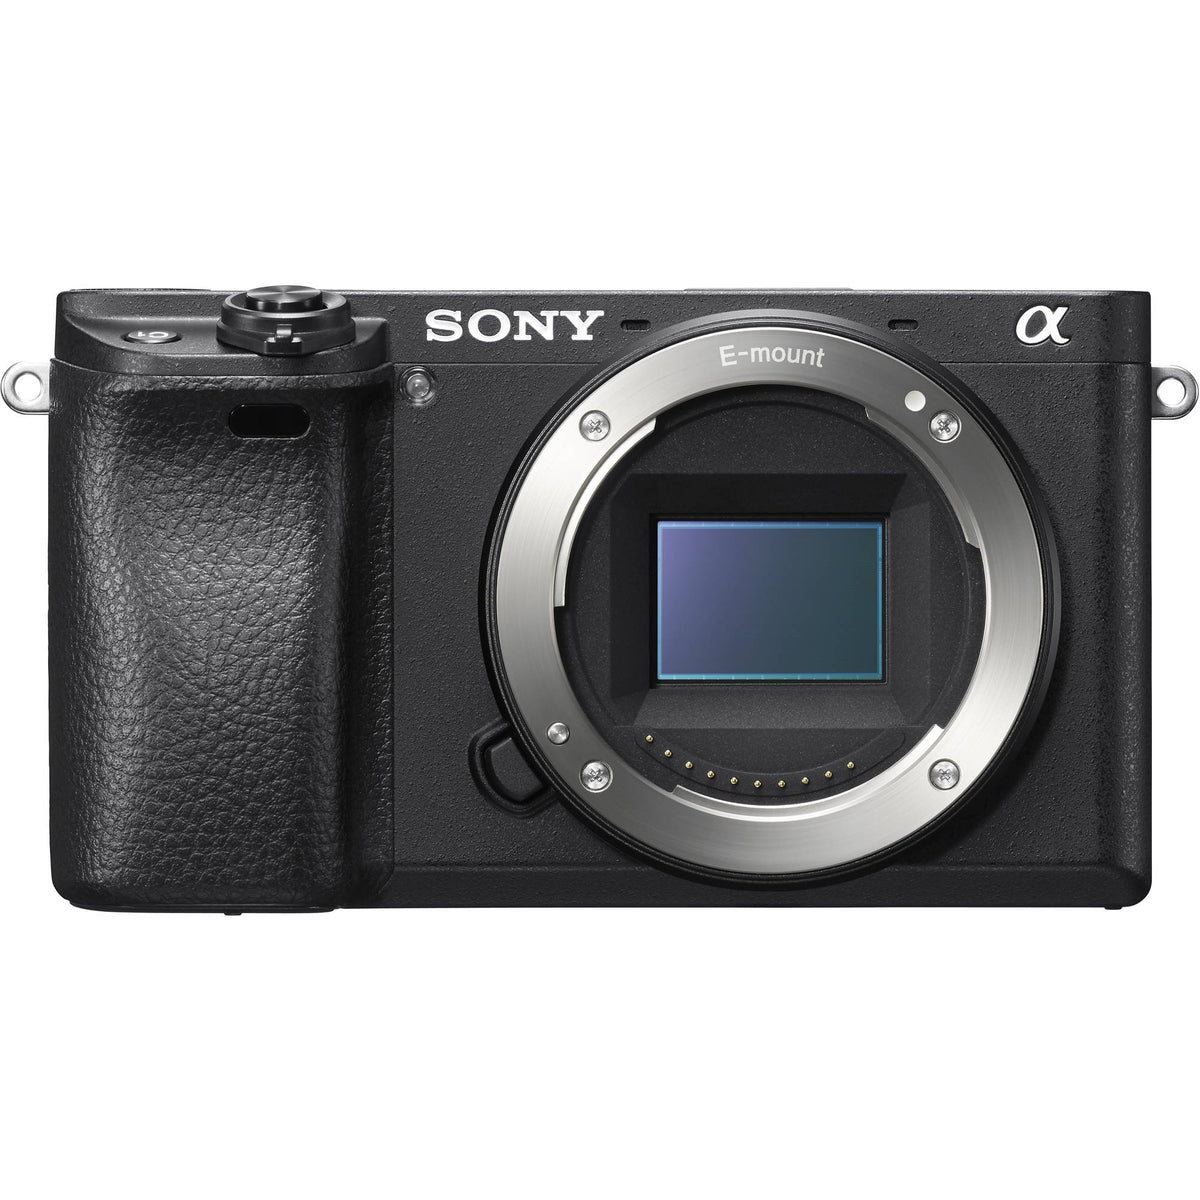 Sony Alpha a6300 Mirrorless Camera: Interchangeable Lens Digital Camera with APS-C, Auto Focus & 4K Video - ILCE 6300 Body with 3ÃƒÆ’Ã‚Â¢ÃƒÂ¢Ã¢â‚¬Å¡Ã‚Â¬Ãƒâ€šÃ‚Â LCD Screen - E Mount Compatible - Black (Includes Body Only)